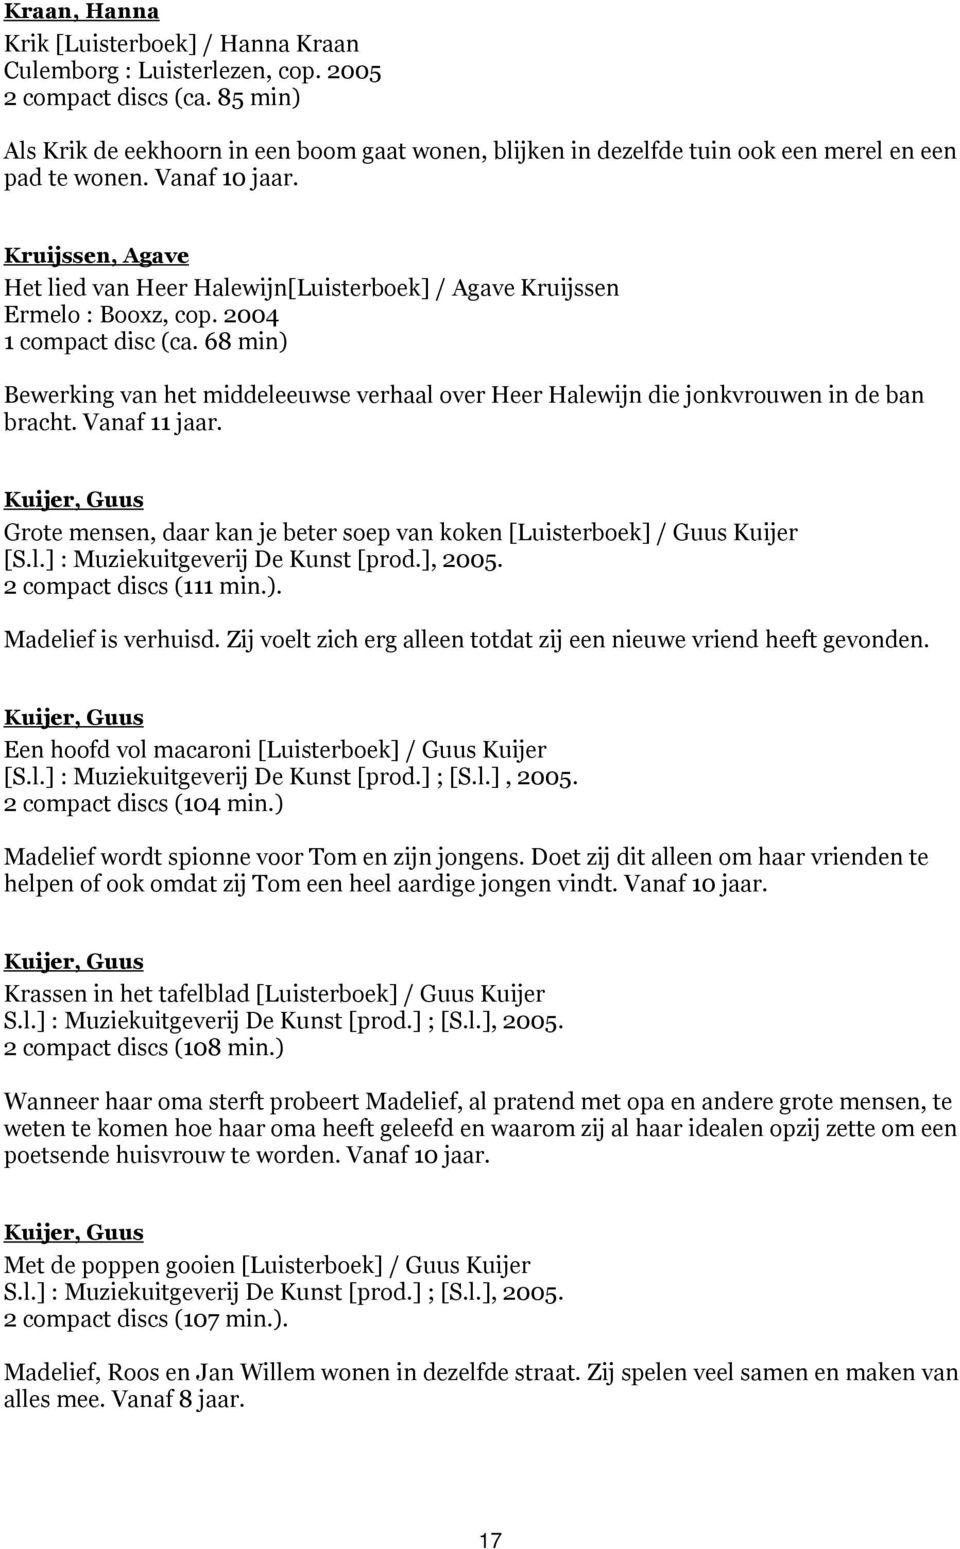 Kruijssen, Agave Het lied van Heer Halewijn[Luisterboek] / Agave Kruijssen Ermelo : Booxz, cop. 2004 1 compact disc (ca.